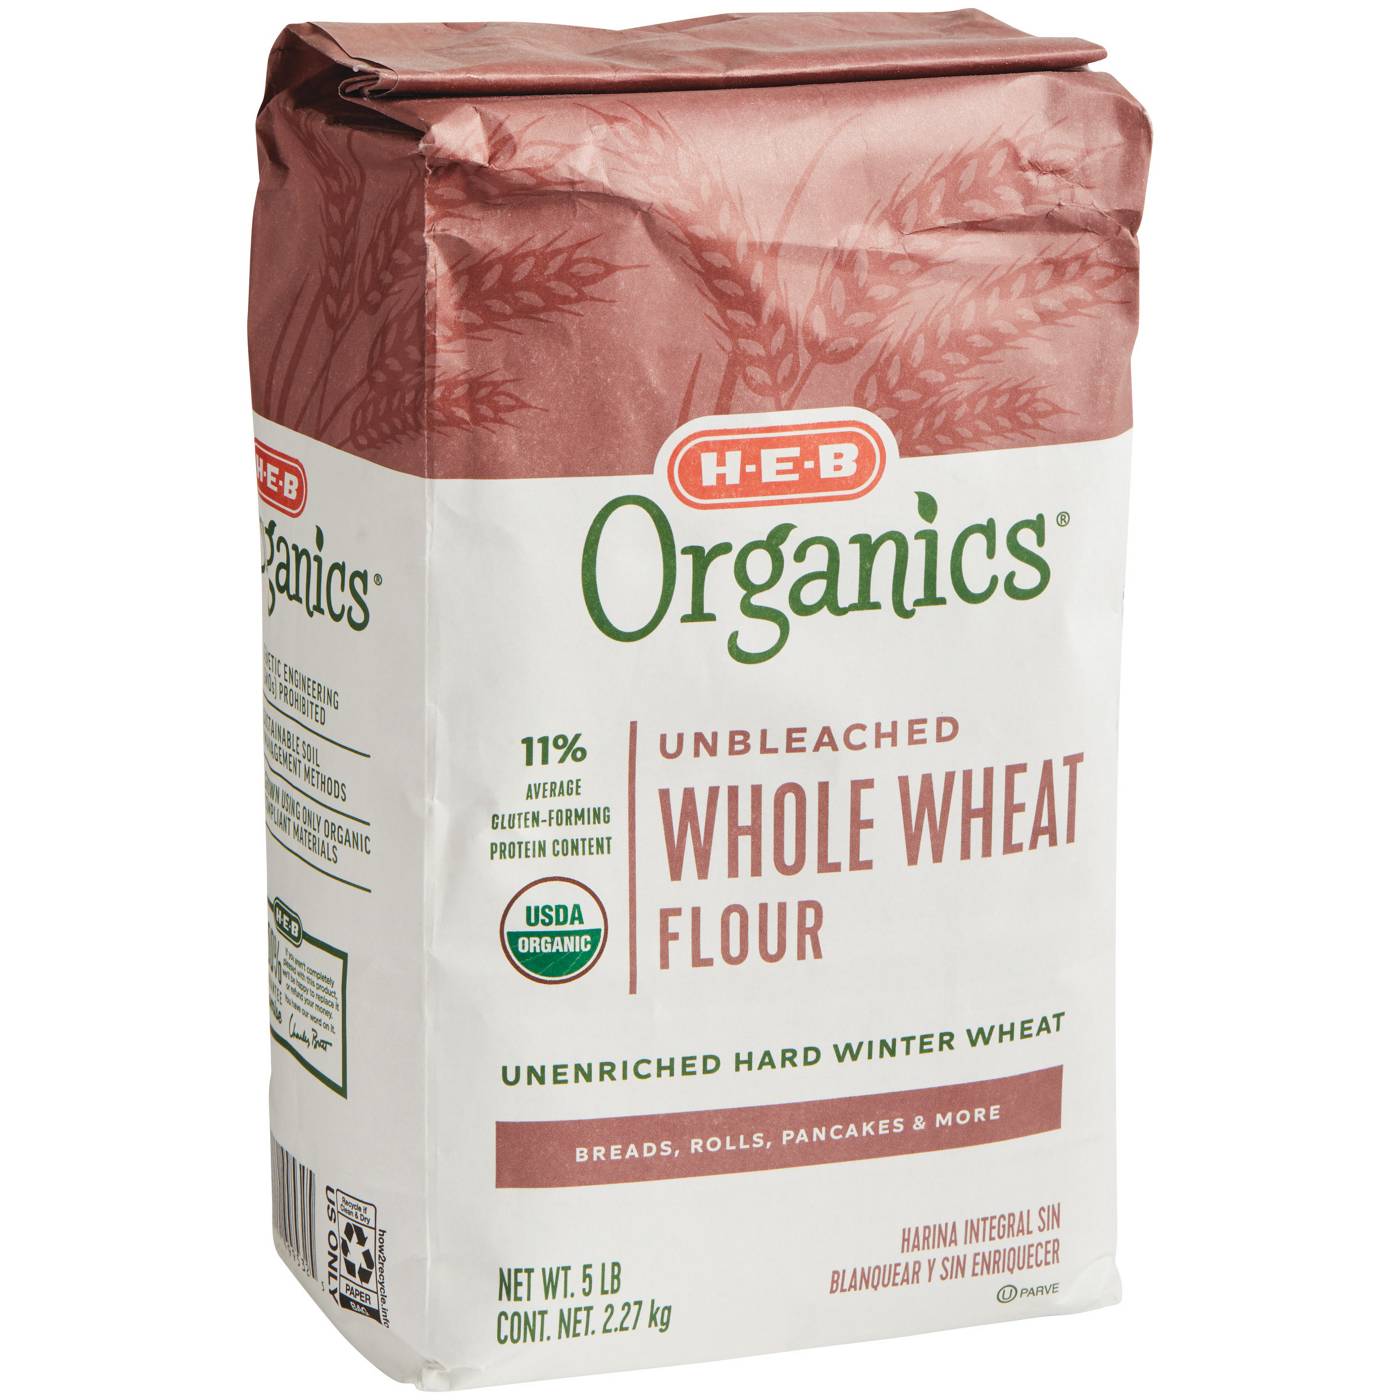 H-E-B Organics Unbleached Whole Wheat Flour; image 2 of 2